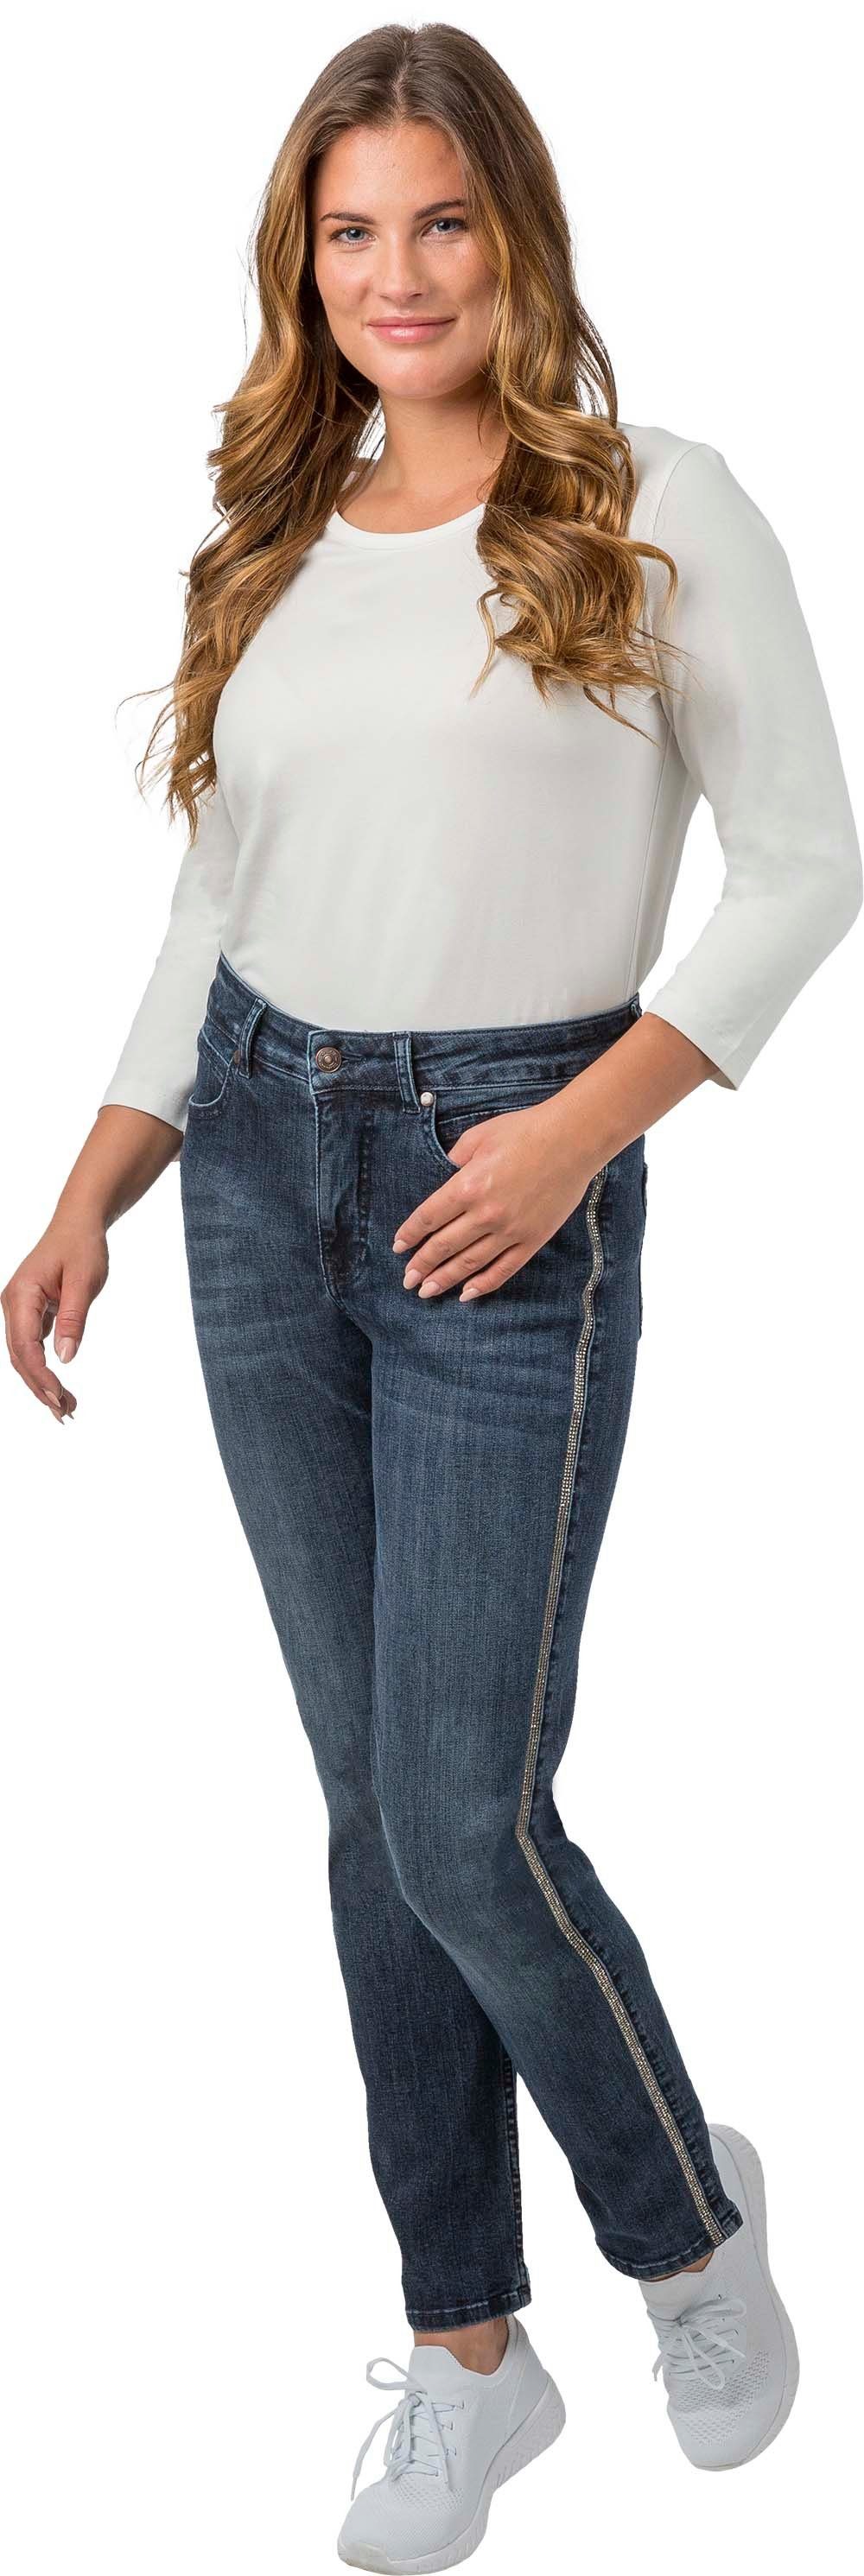 Gio Milano Stretch-Jeans Gio-Kim3 bequeme Jeans mit Strasssteinen längs am Bein